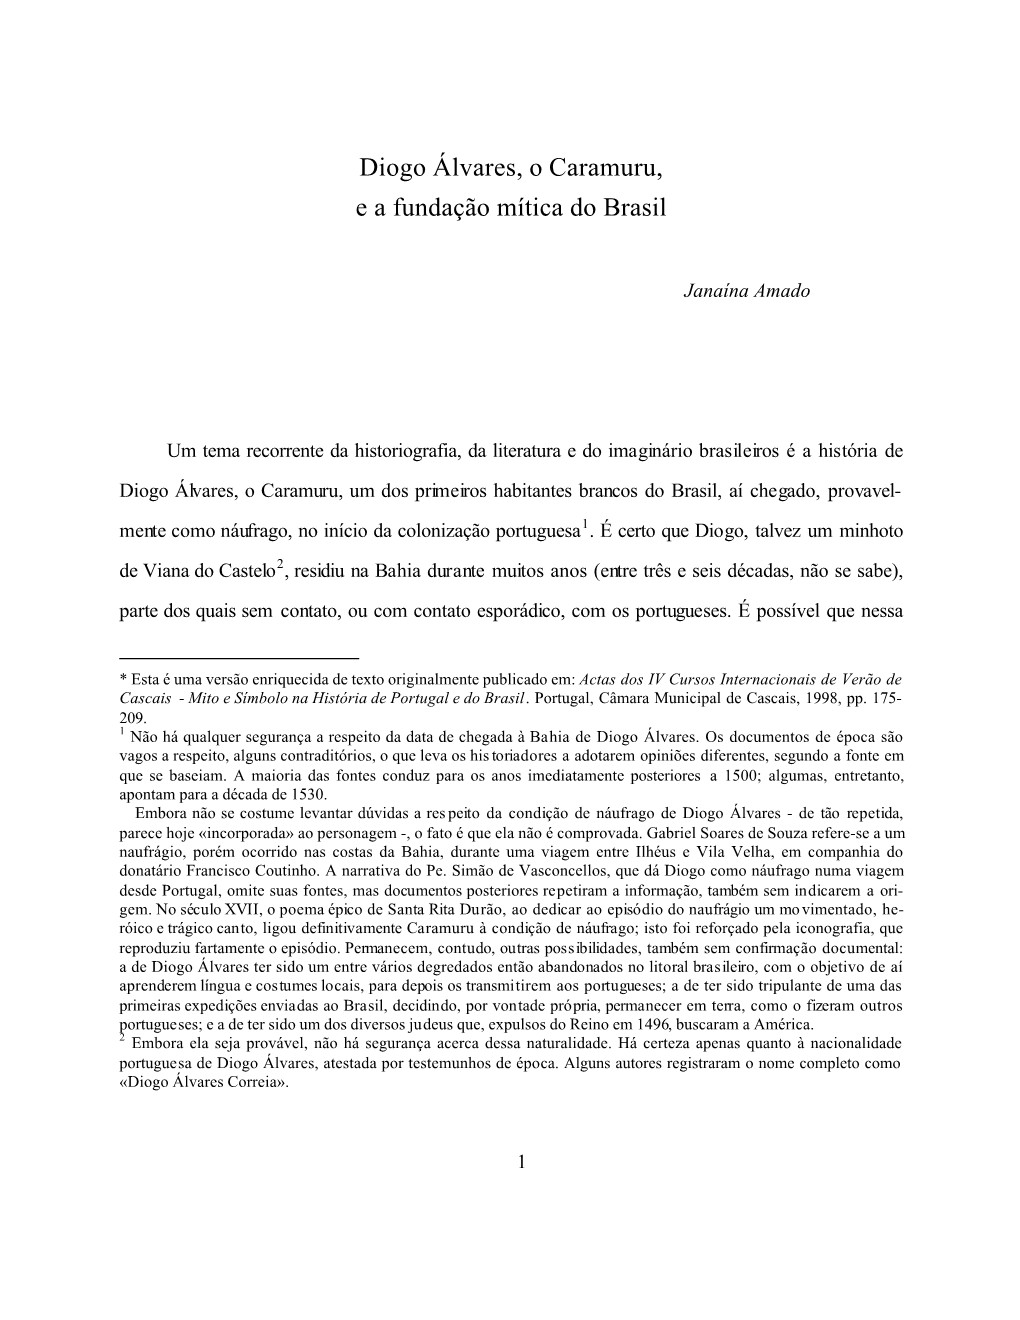 Diogo Álvares, O Caramuru, E a Fundação Mítica Do Brasil